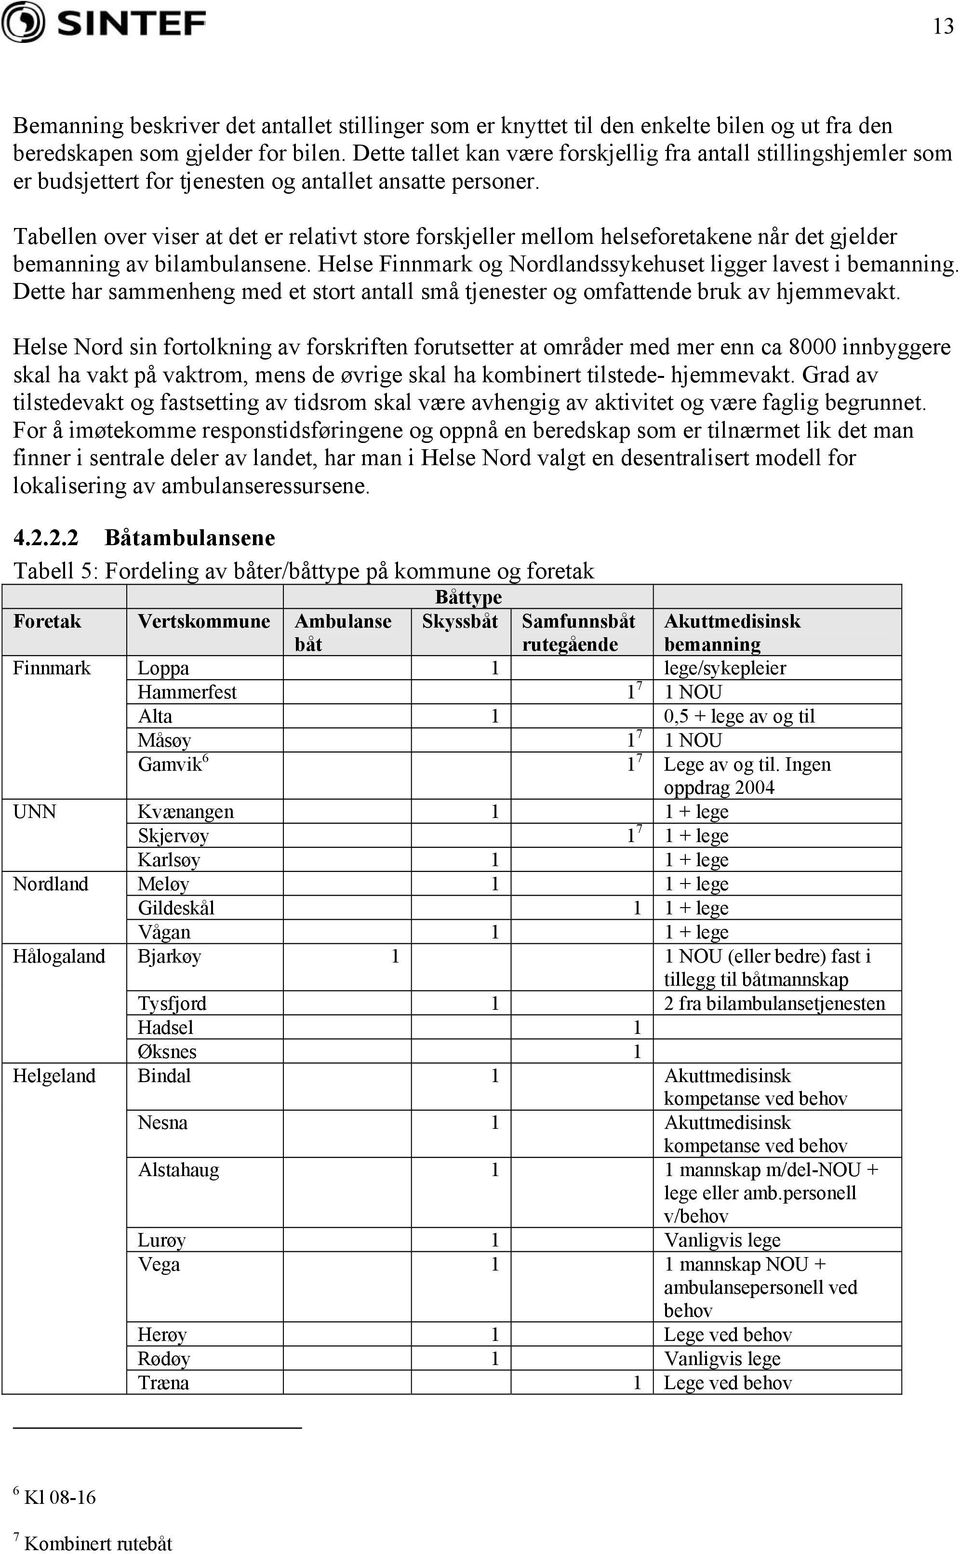 Tabellen over viser at det er relativt store forskjeller mellom helseforetakene når det gjelder bemanning av bilambulansene. Helse Finnmark og Nordlandssykehuset ligger lavest i bemanning.